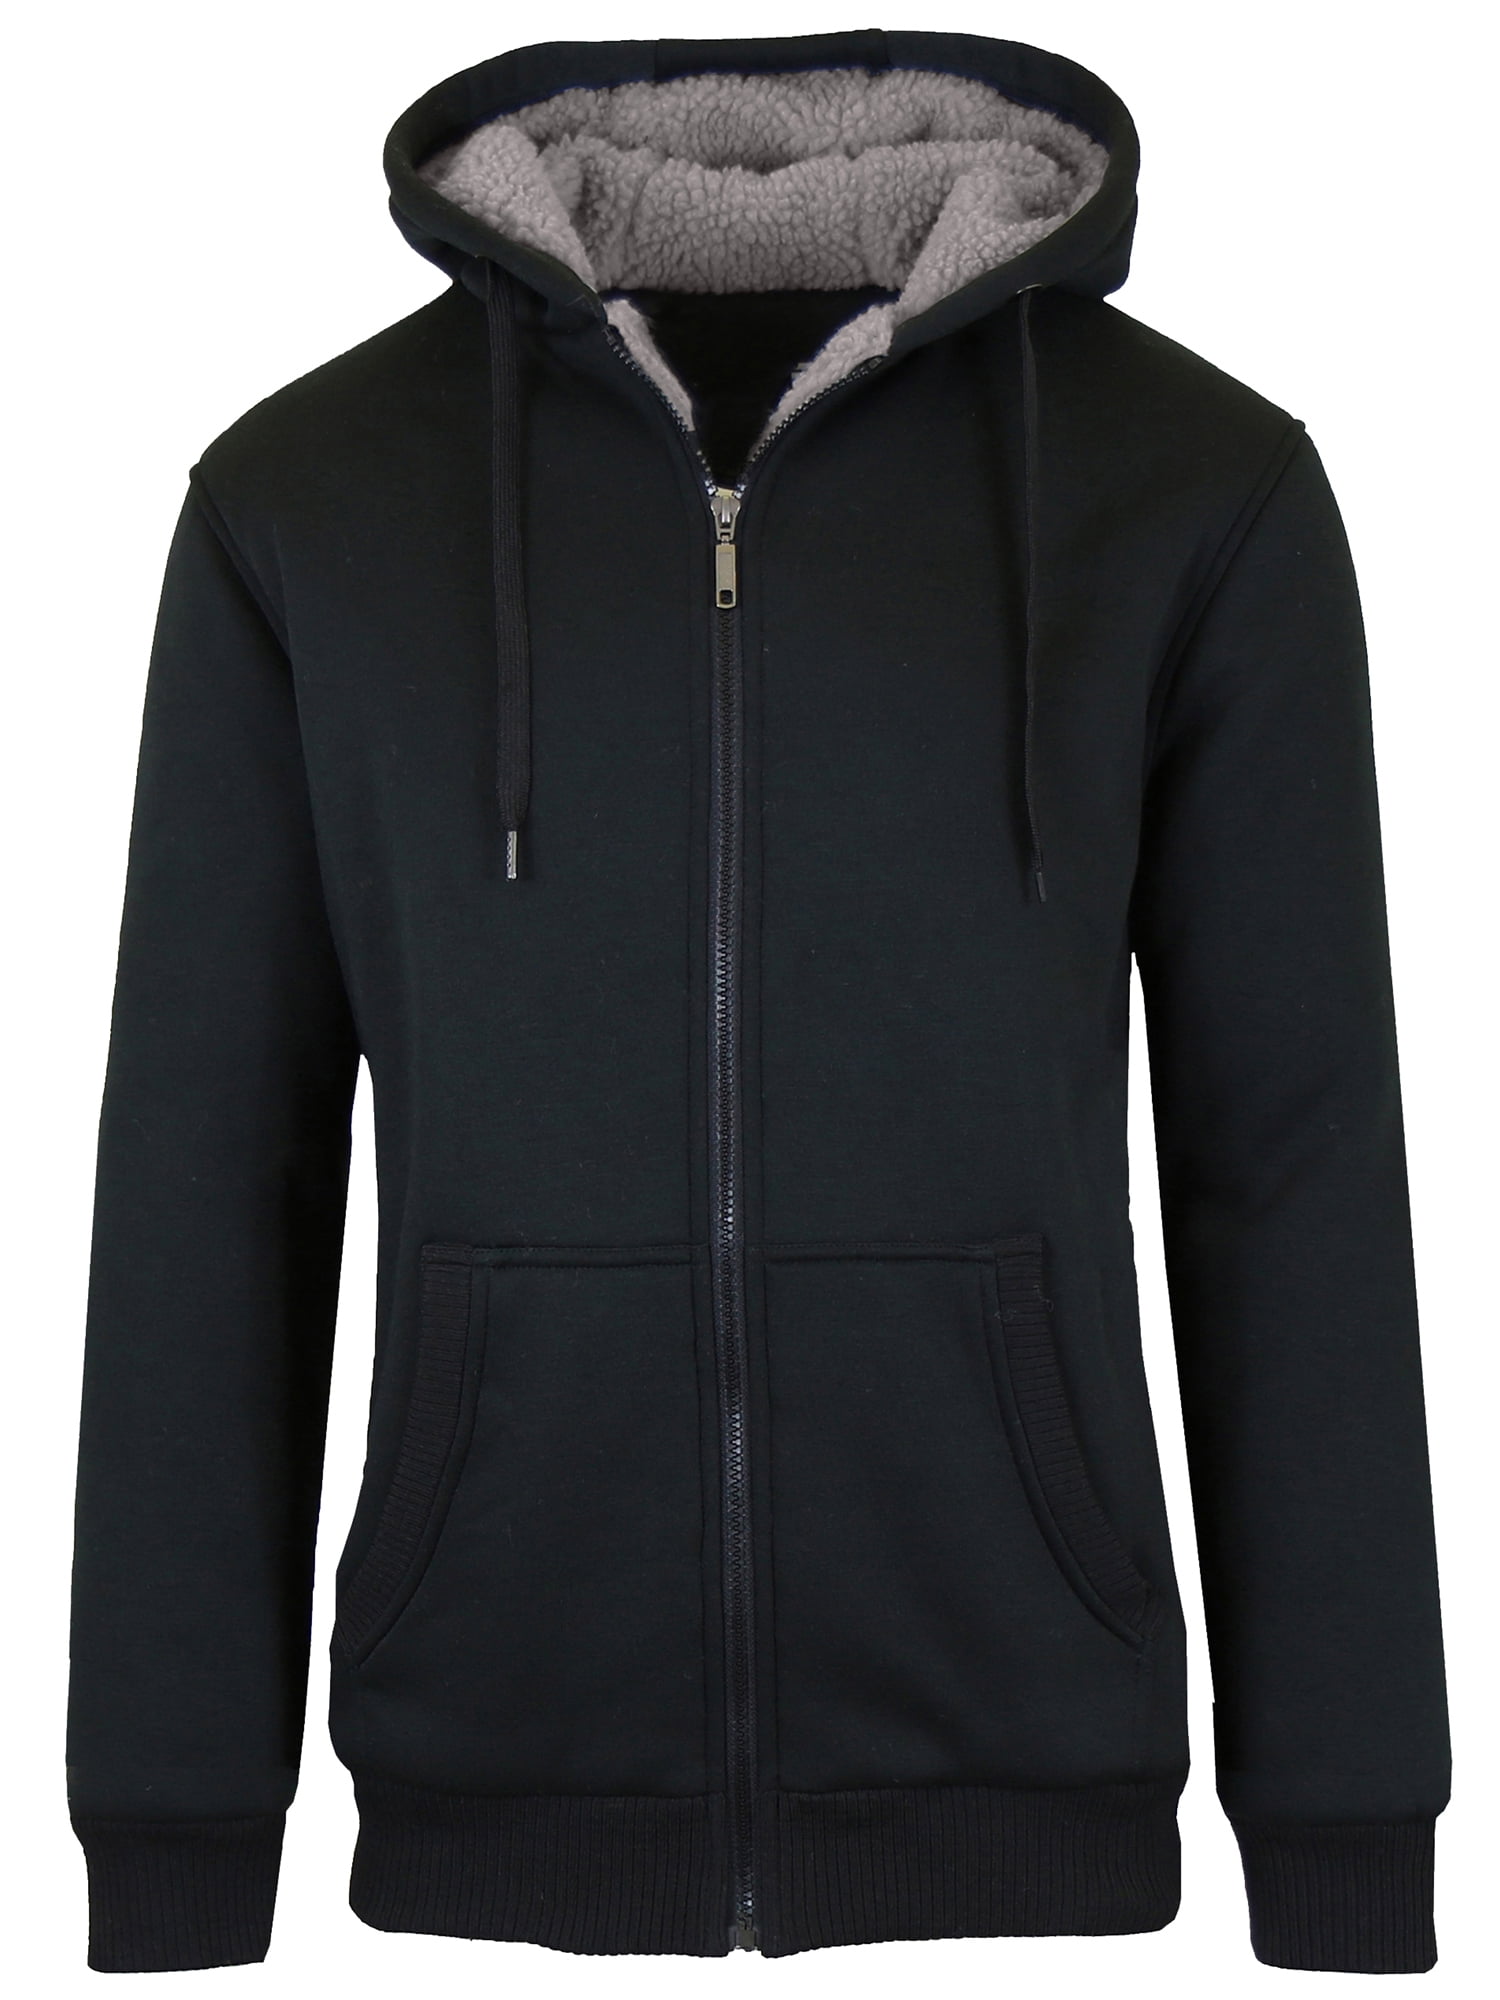 Sherpa lined hoodie mens